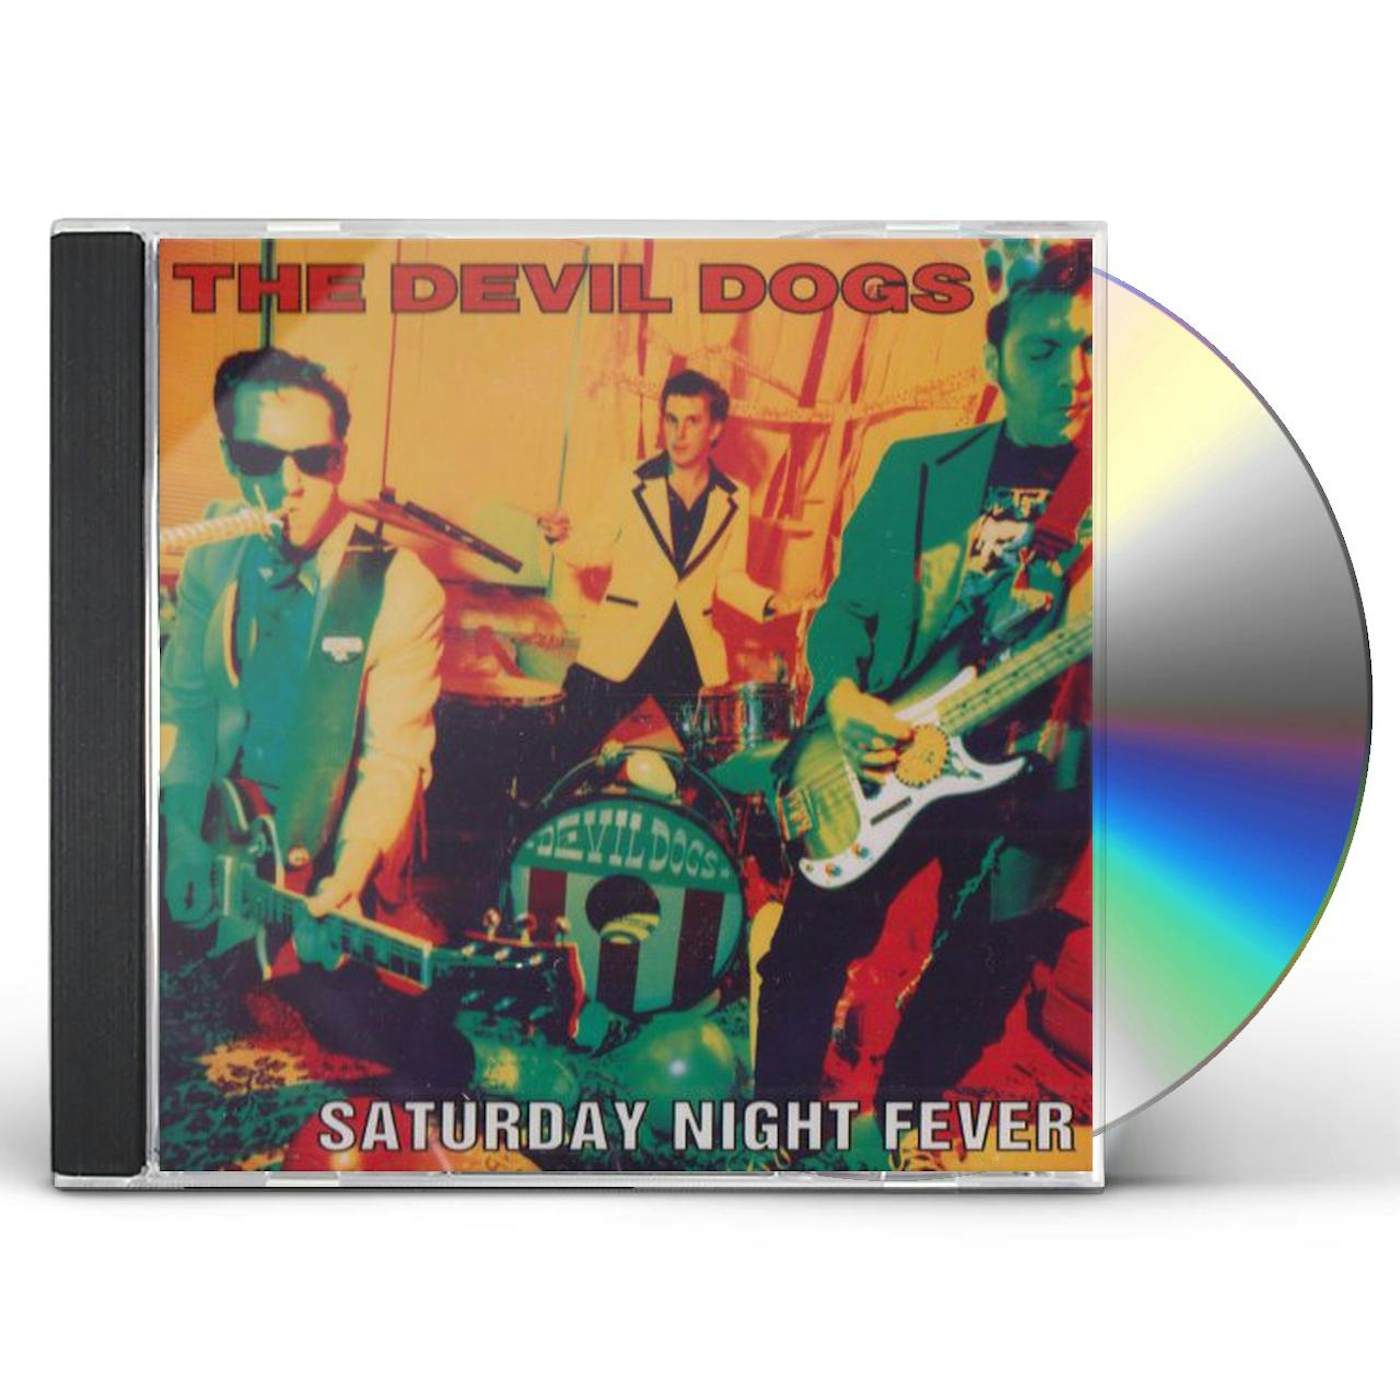 The Devil Dogs SATURDAY NITE FEVER CD